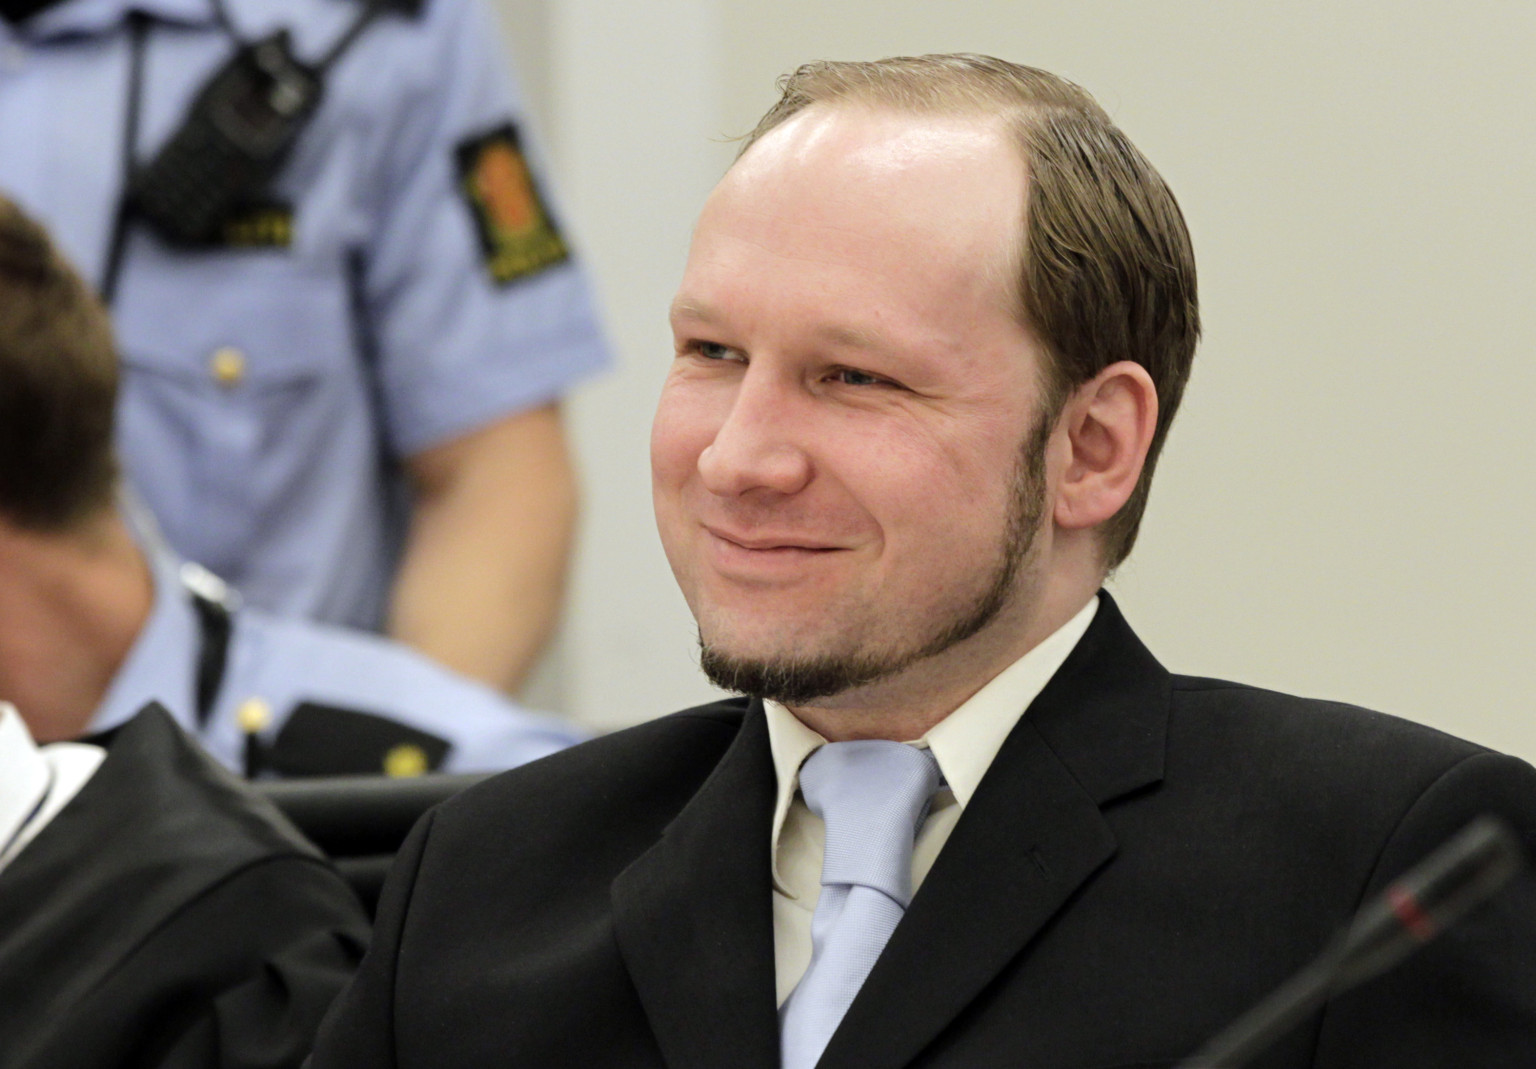 anders-breivik-enrolls-in-university-of-oslo-political-science-courses